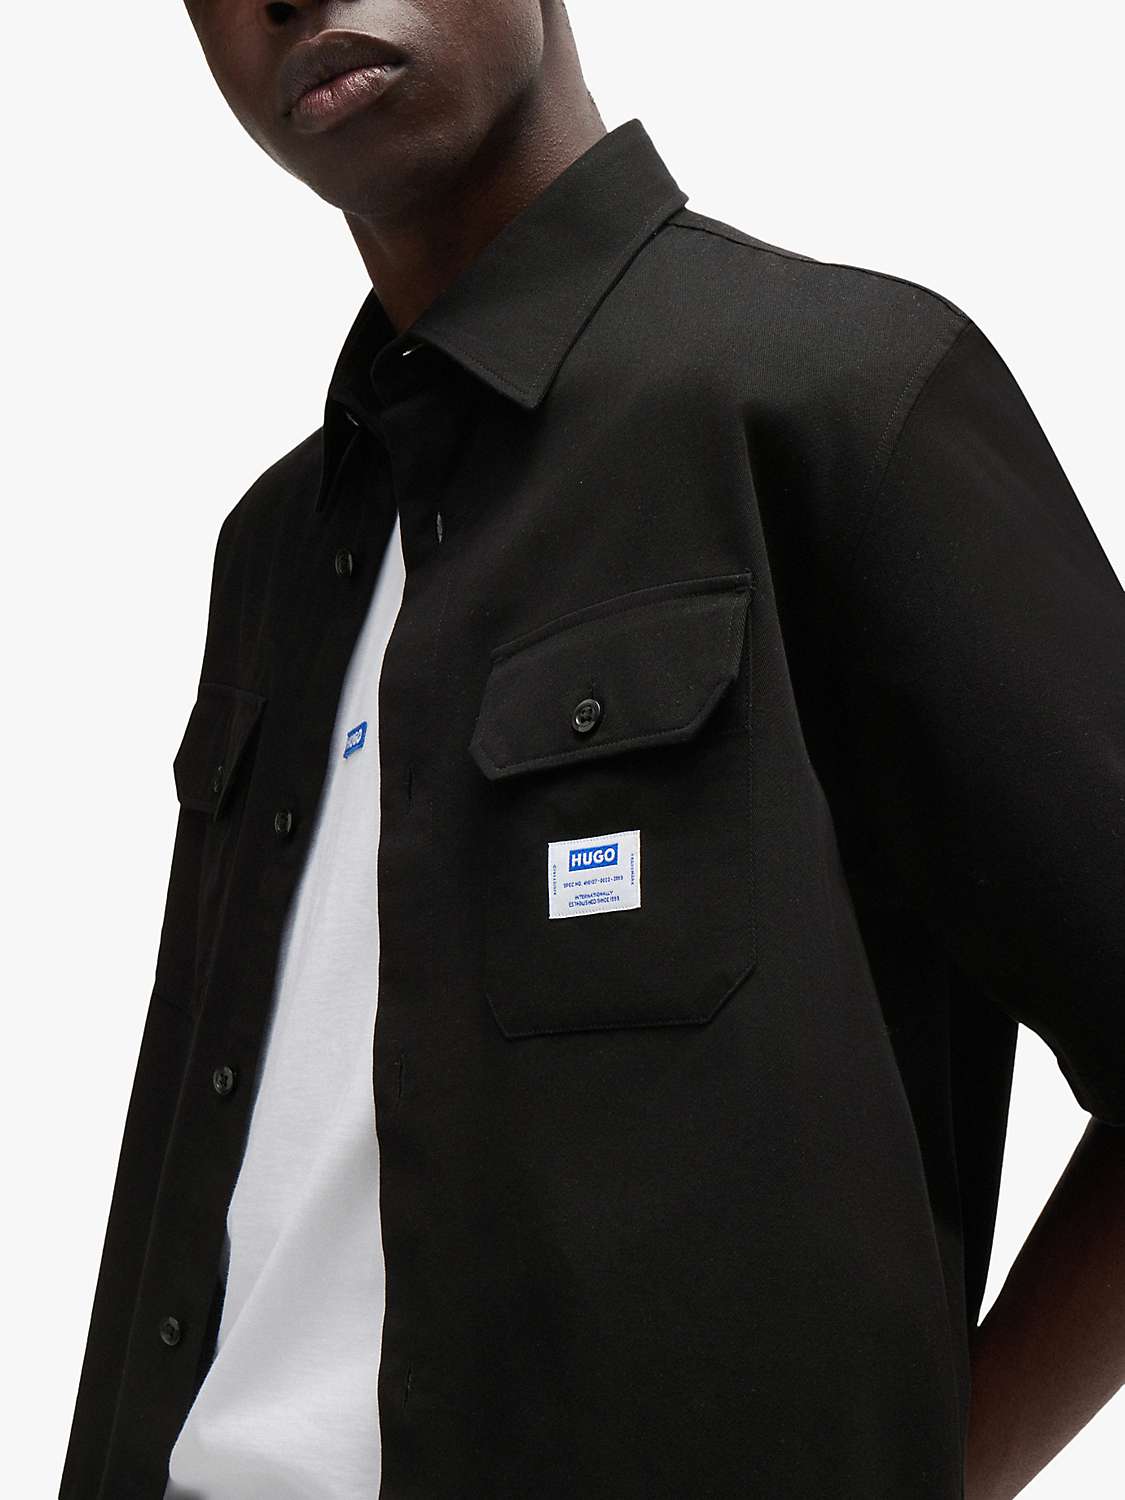 Buy HUGO Ekyno Kent Collar Shirt, Black Online at johnlewis.com